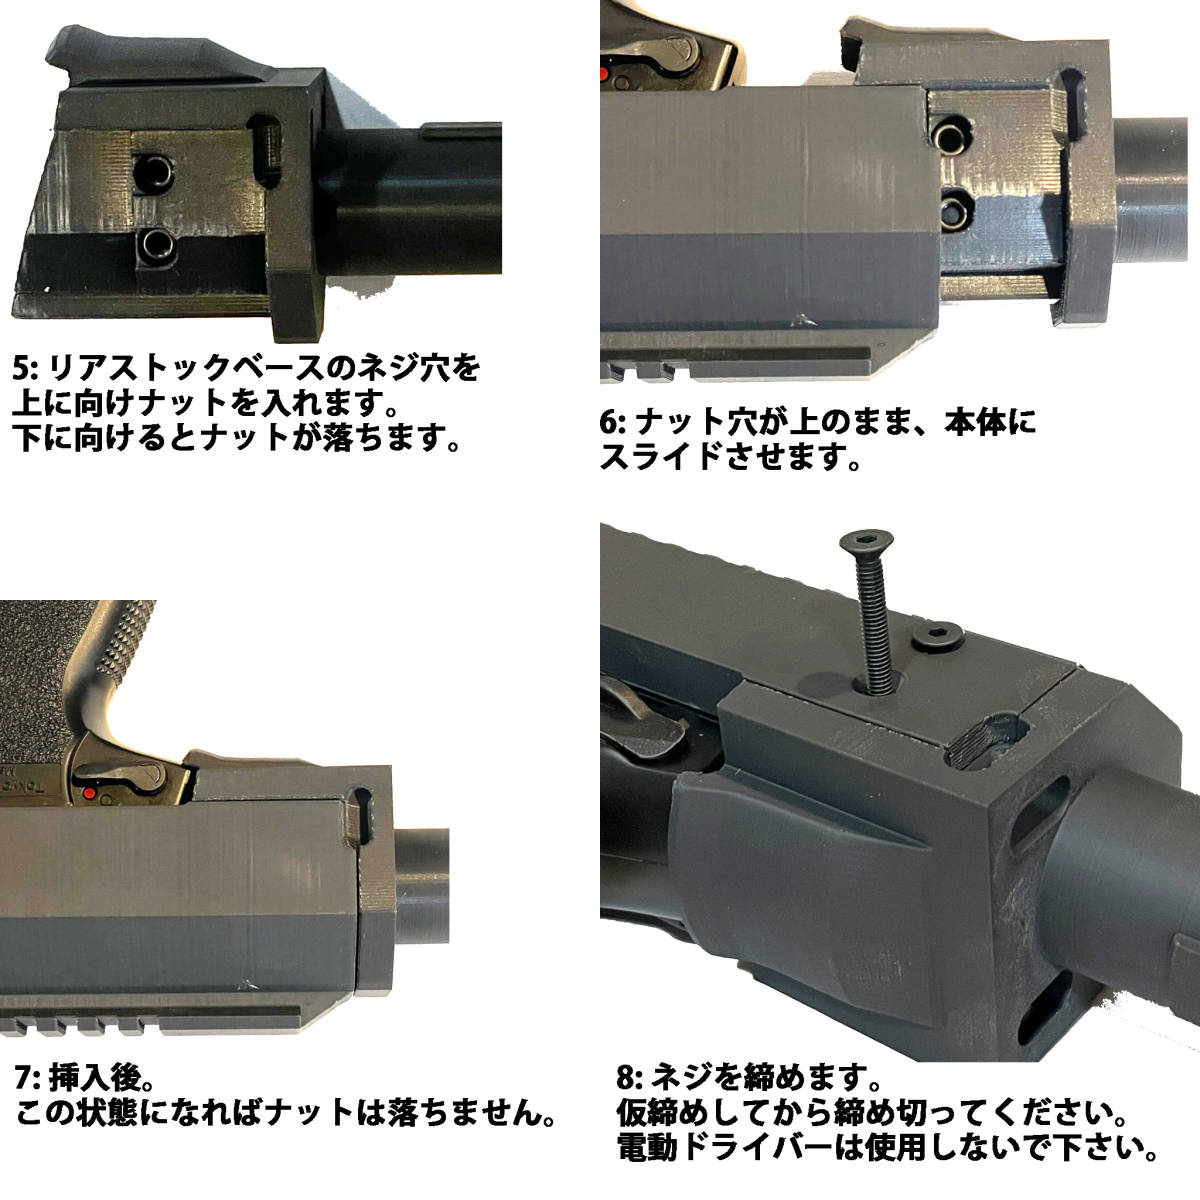 東京マルイ ソーコム SOCOM Mk23 カービンキット ハンドガード4段/M4樹脂ストックパイプ_画像8